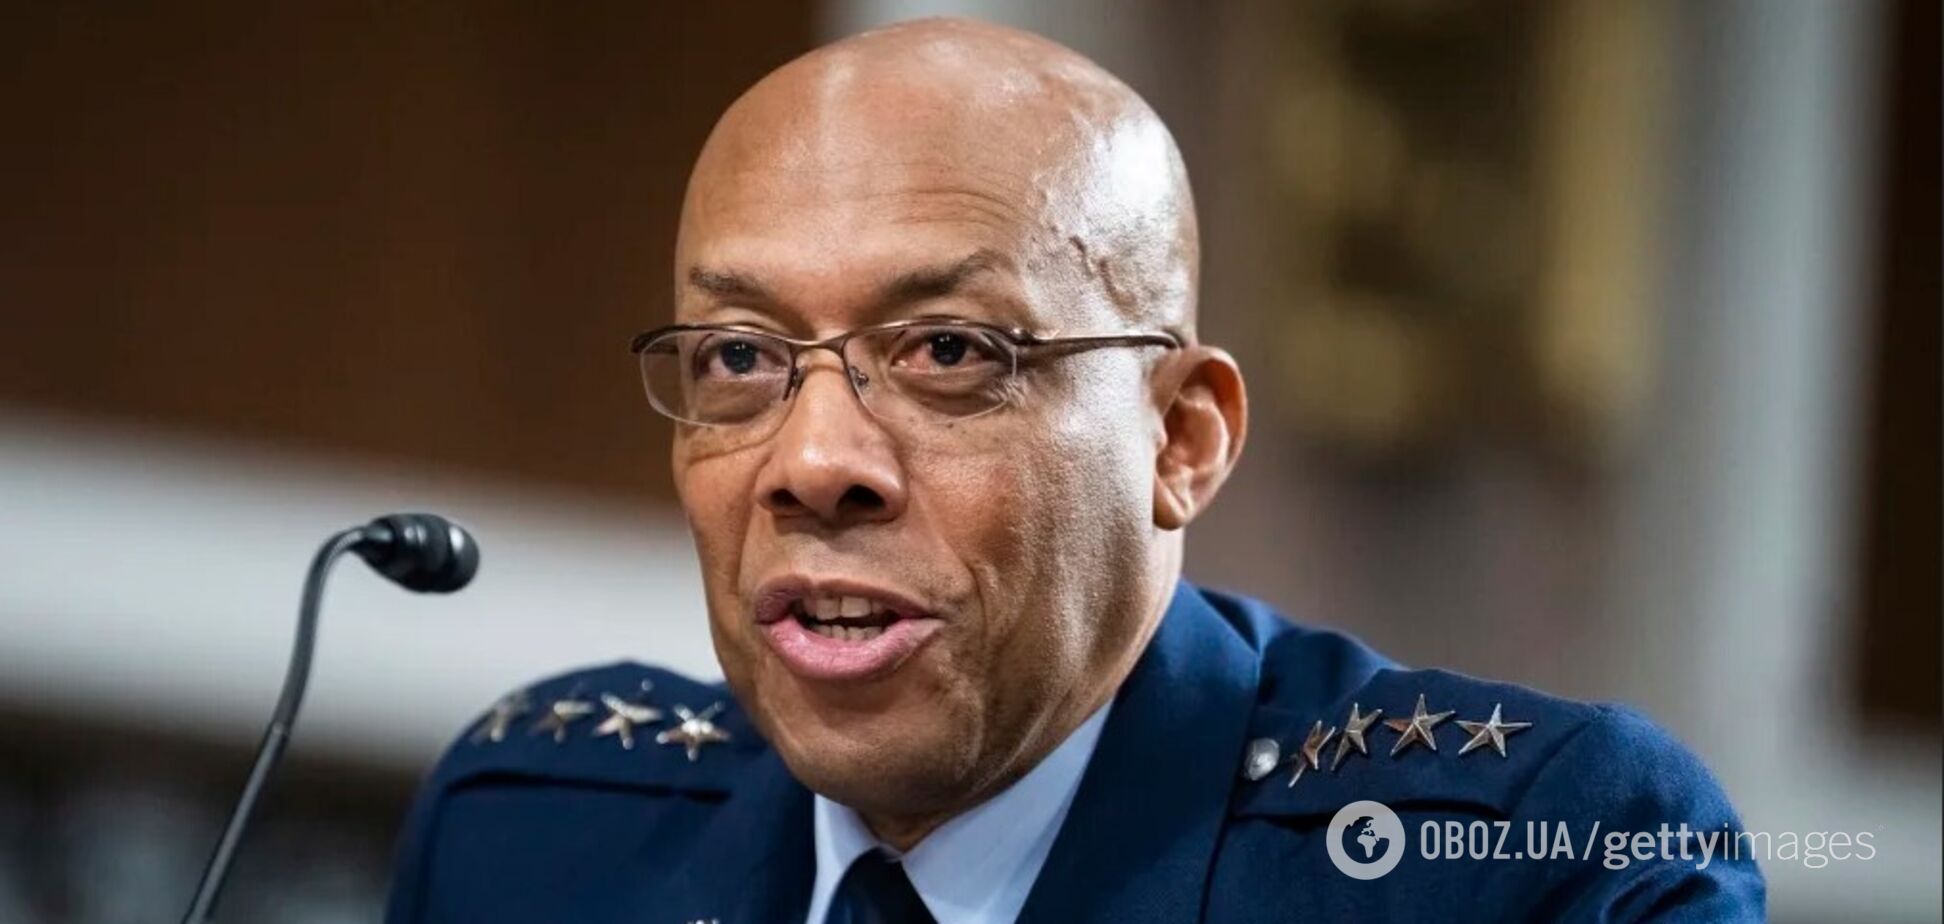 'Прямий виклик глобальній безпеці': генерал Браун закликав діяти невідкладно, щоб зупинити Росію